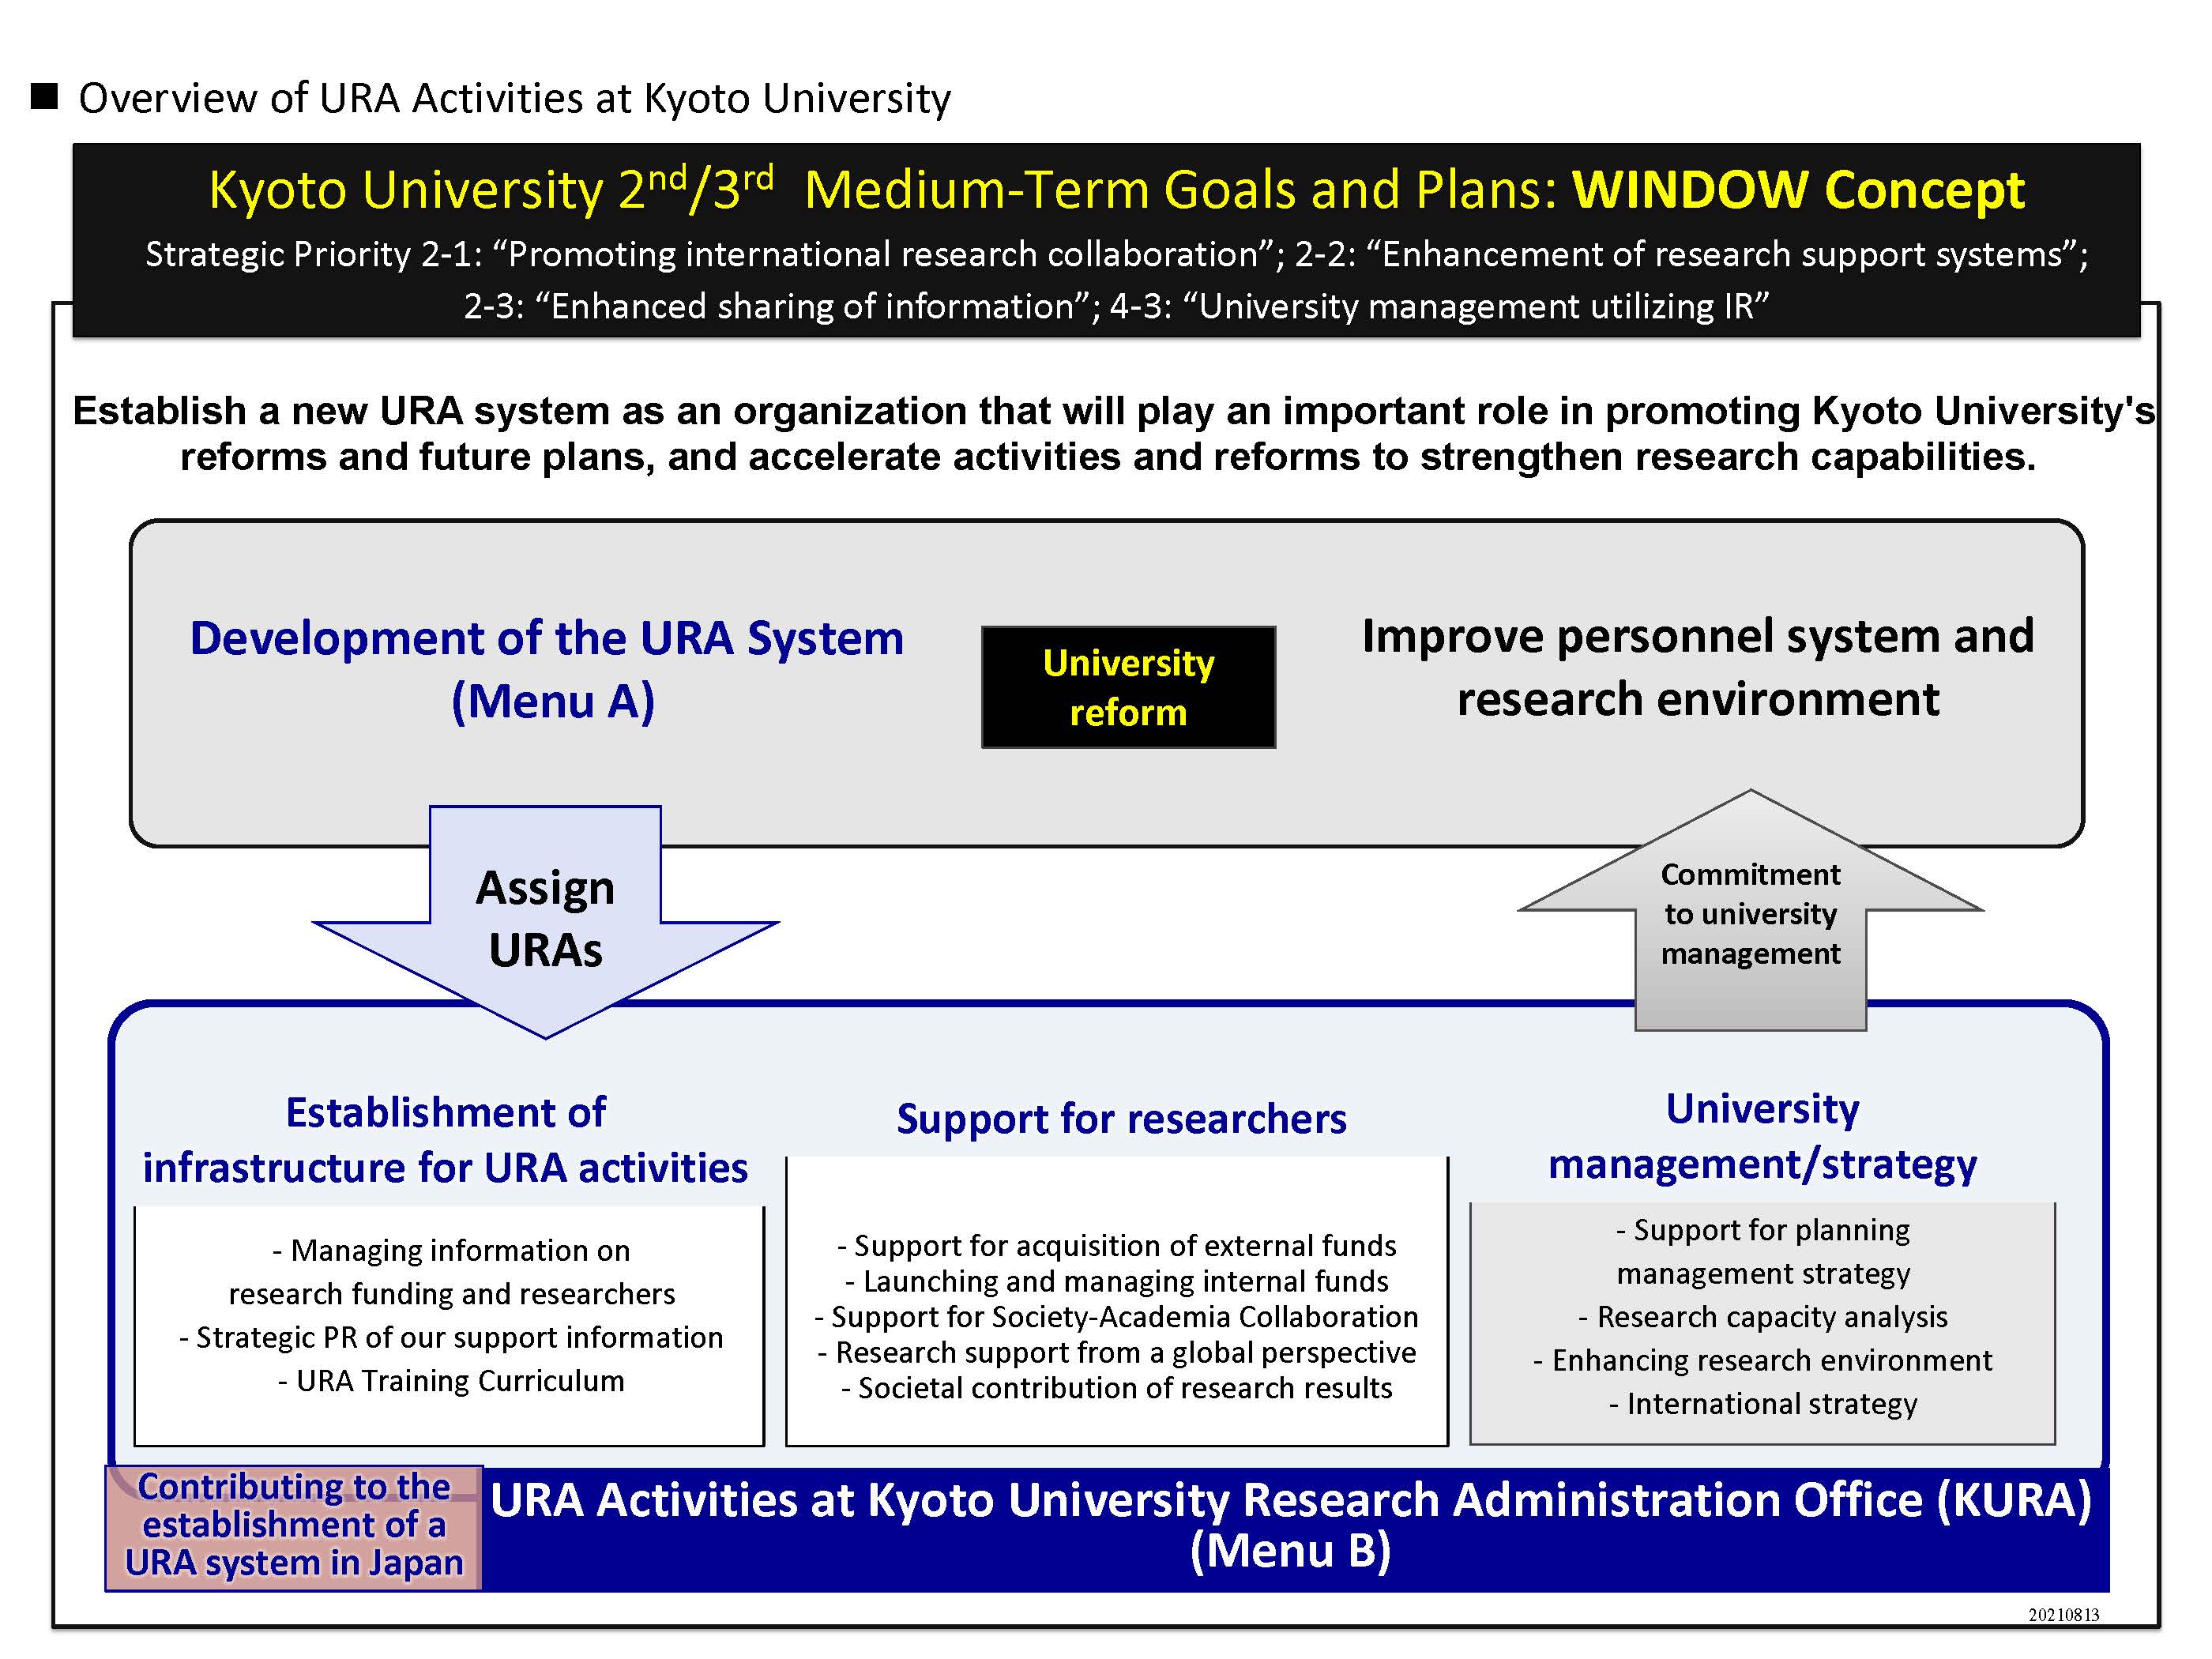 京都大学 第2-3期中期計画・中期目標 -WINDOW構想- について